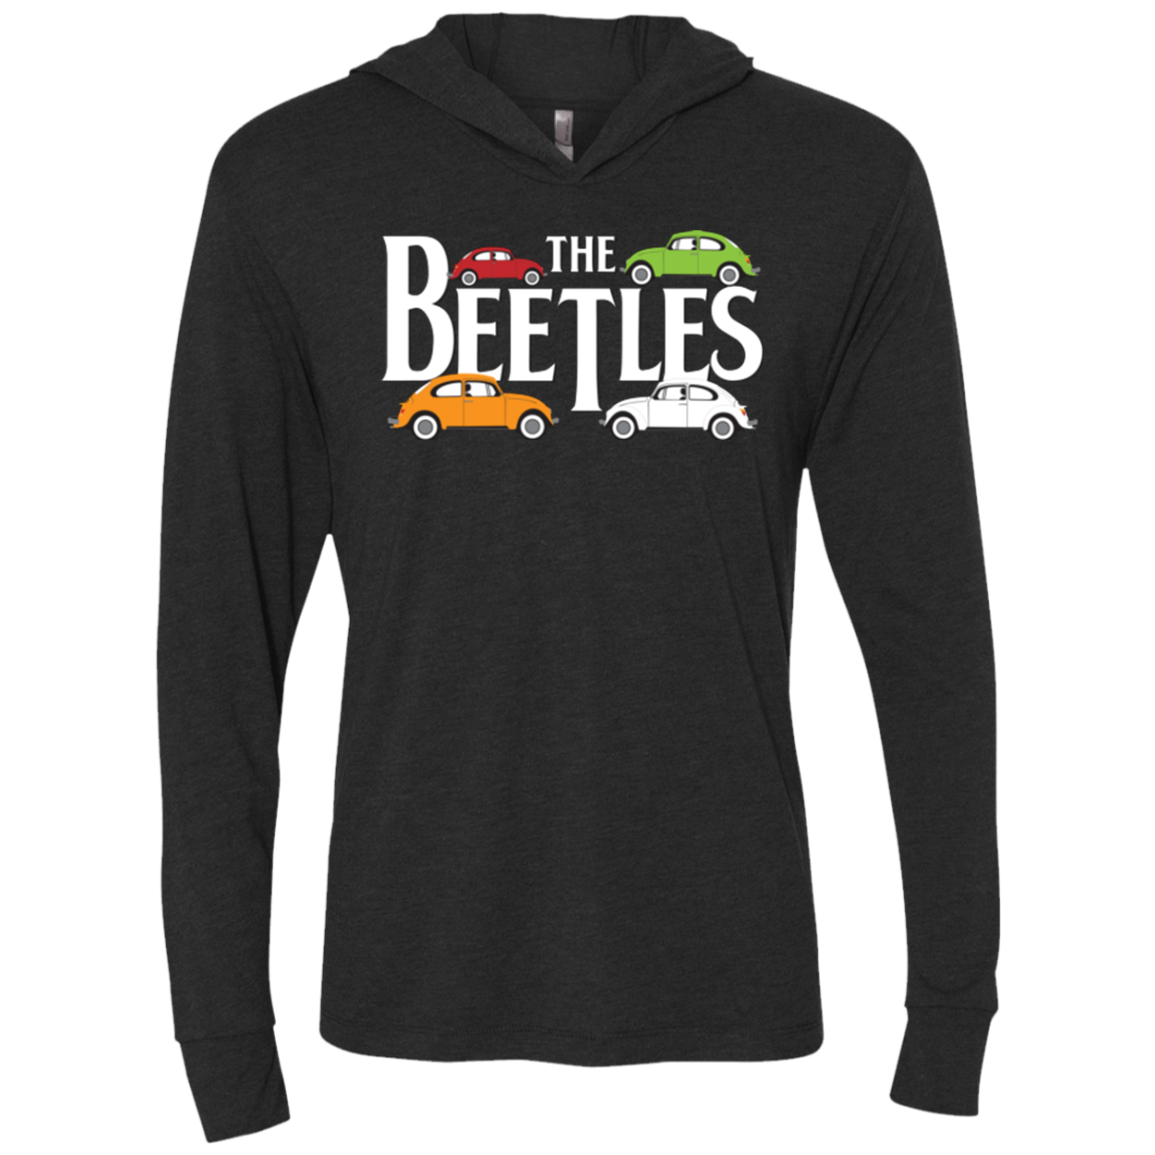 The Beetles Triblend Long Sleeve Hoodie Tee